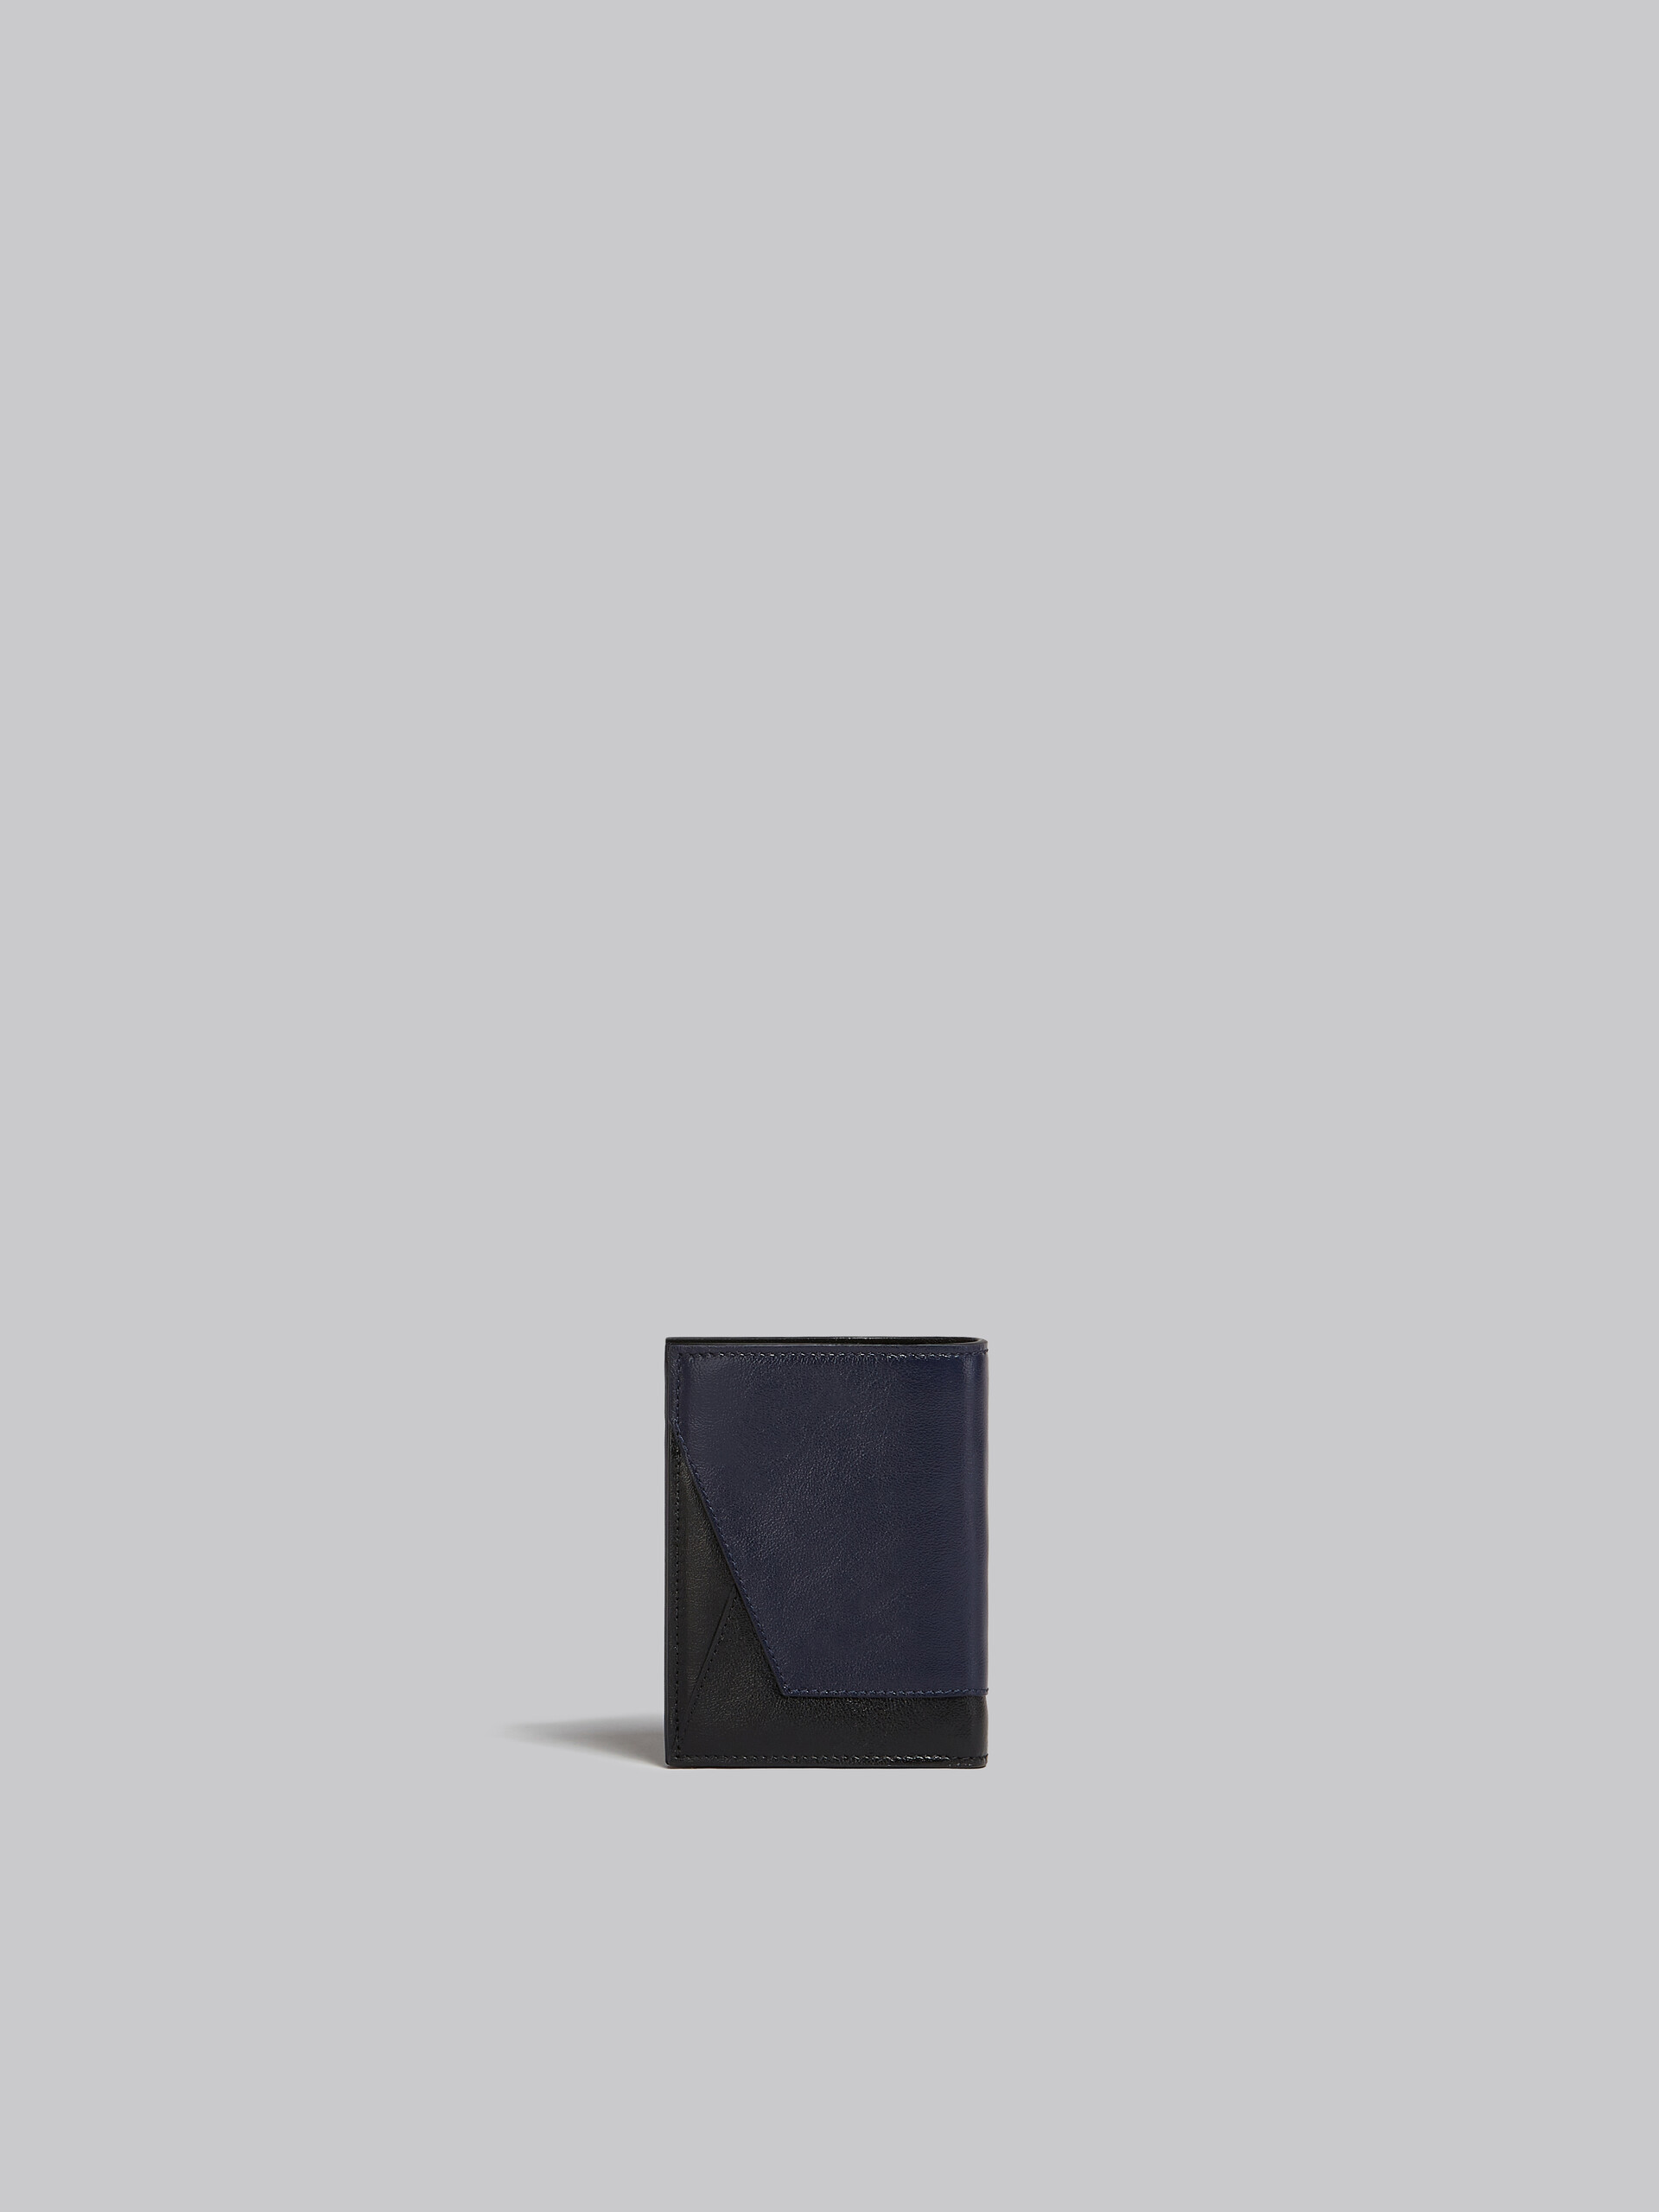 Portafoglio bi-fold in pelle blu e nera - Portafogli - Image 3